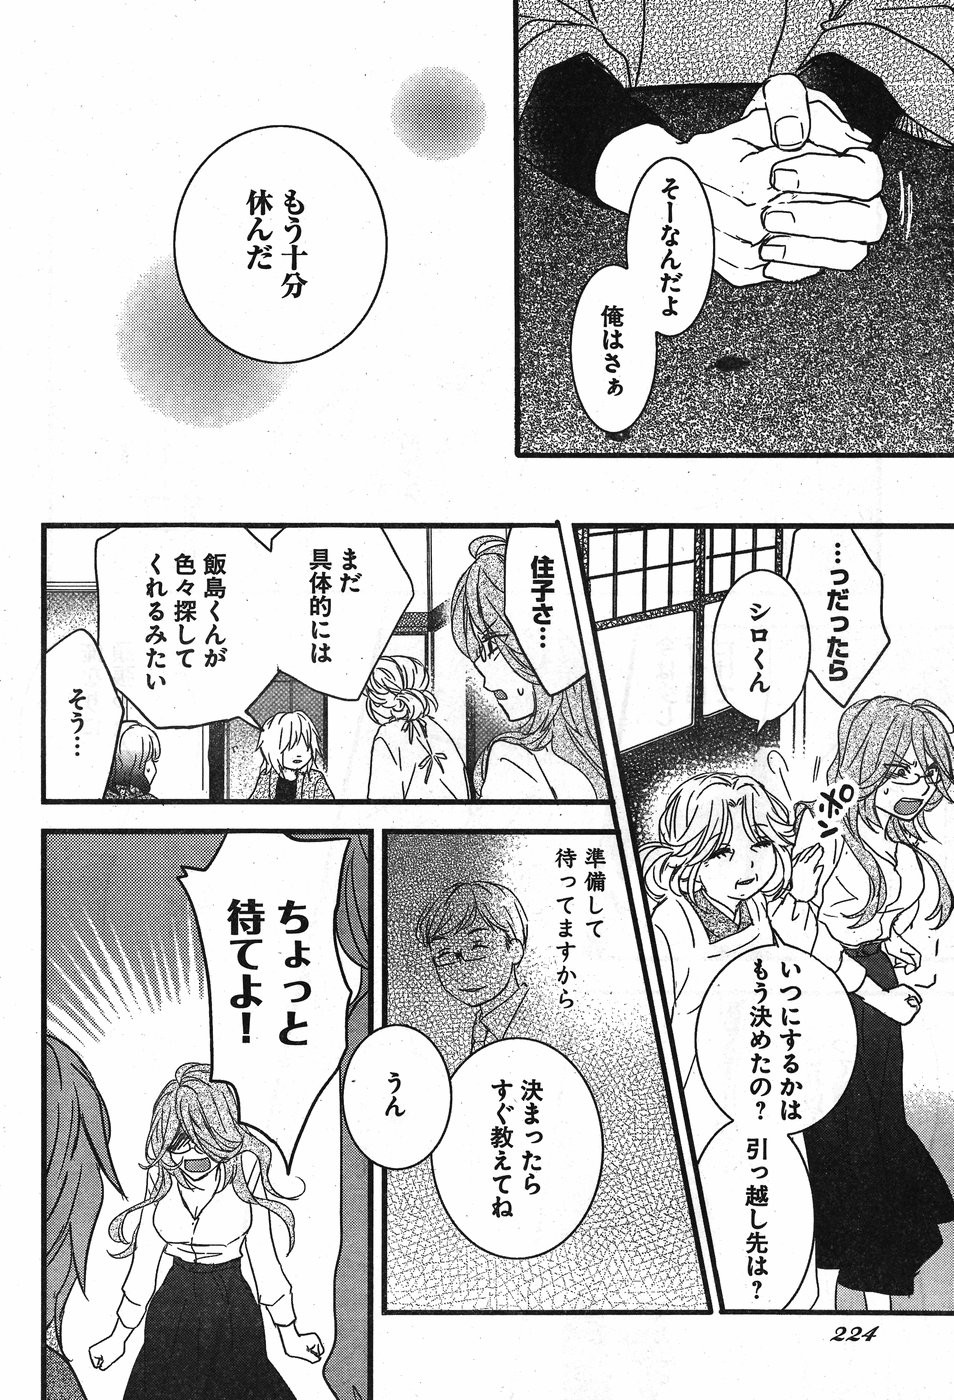 Bokura wa Minna Kawaisou - Chapter 88 - Page 4